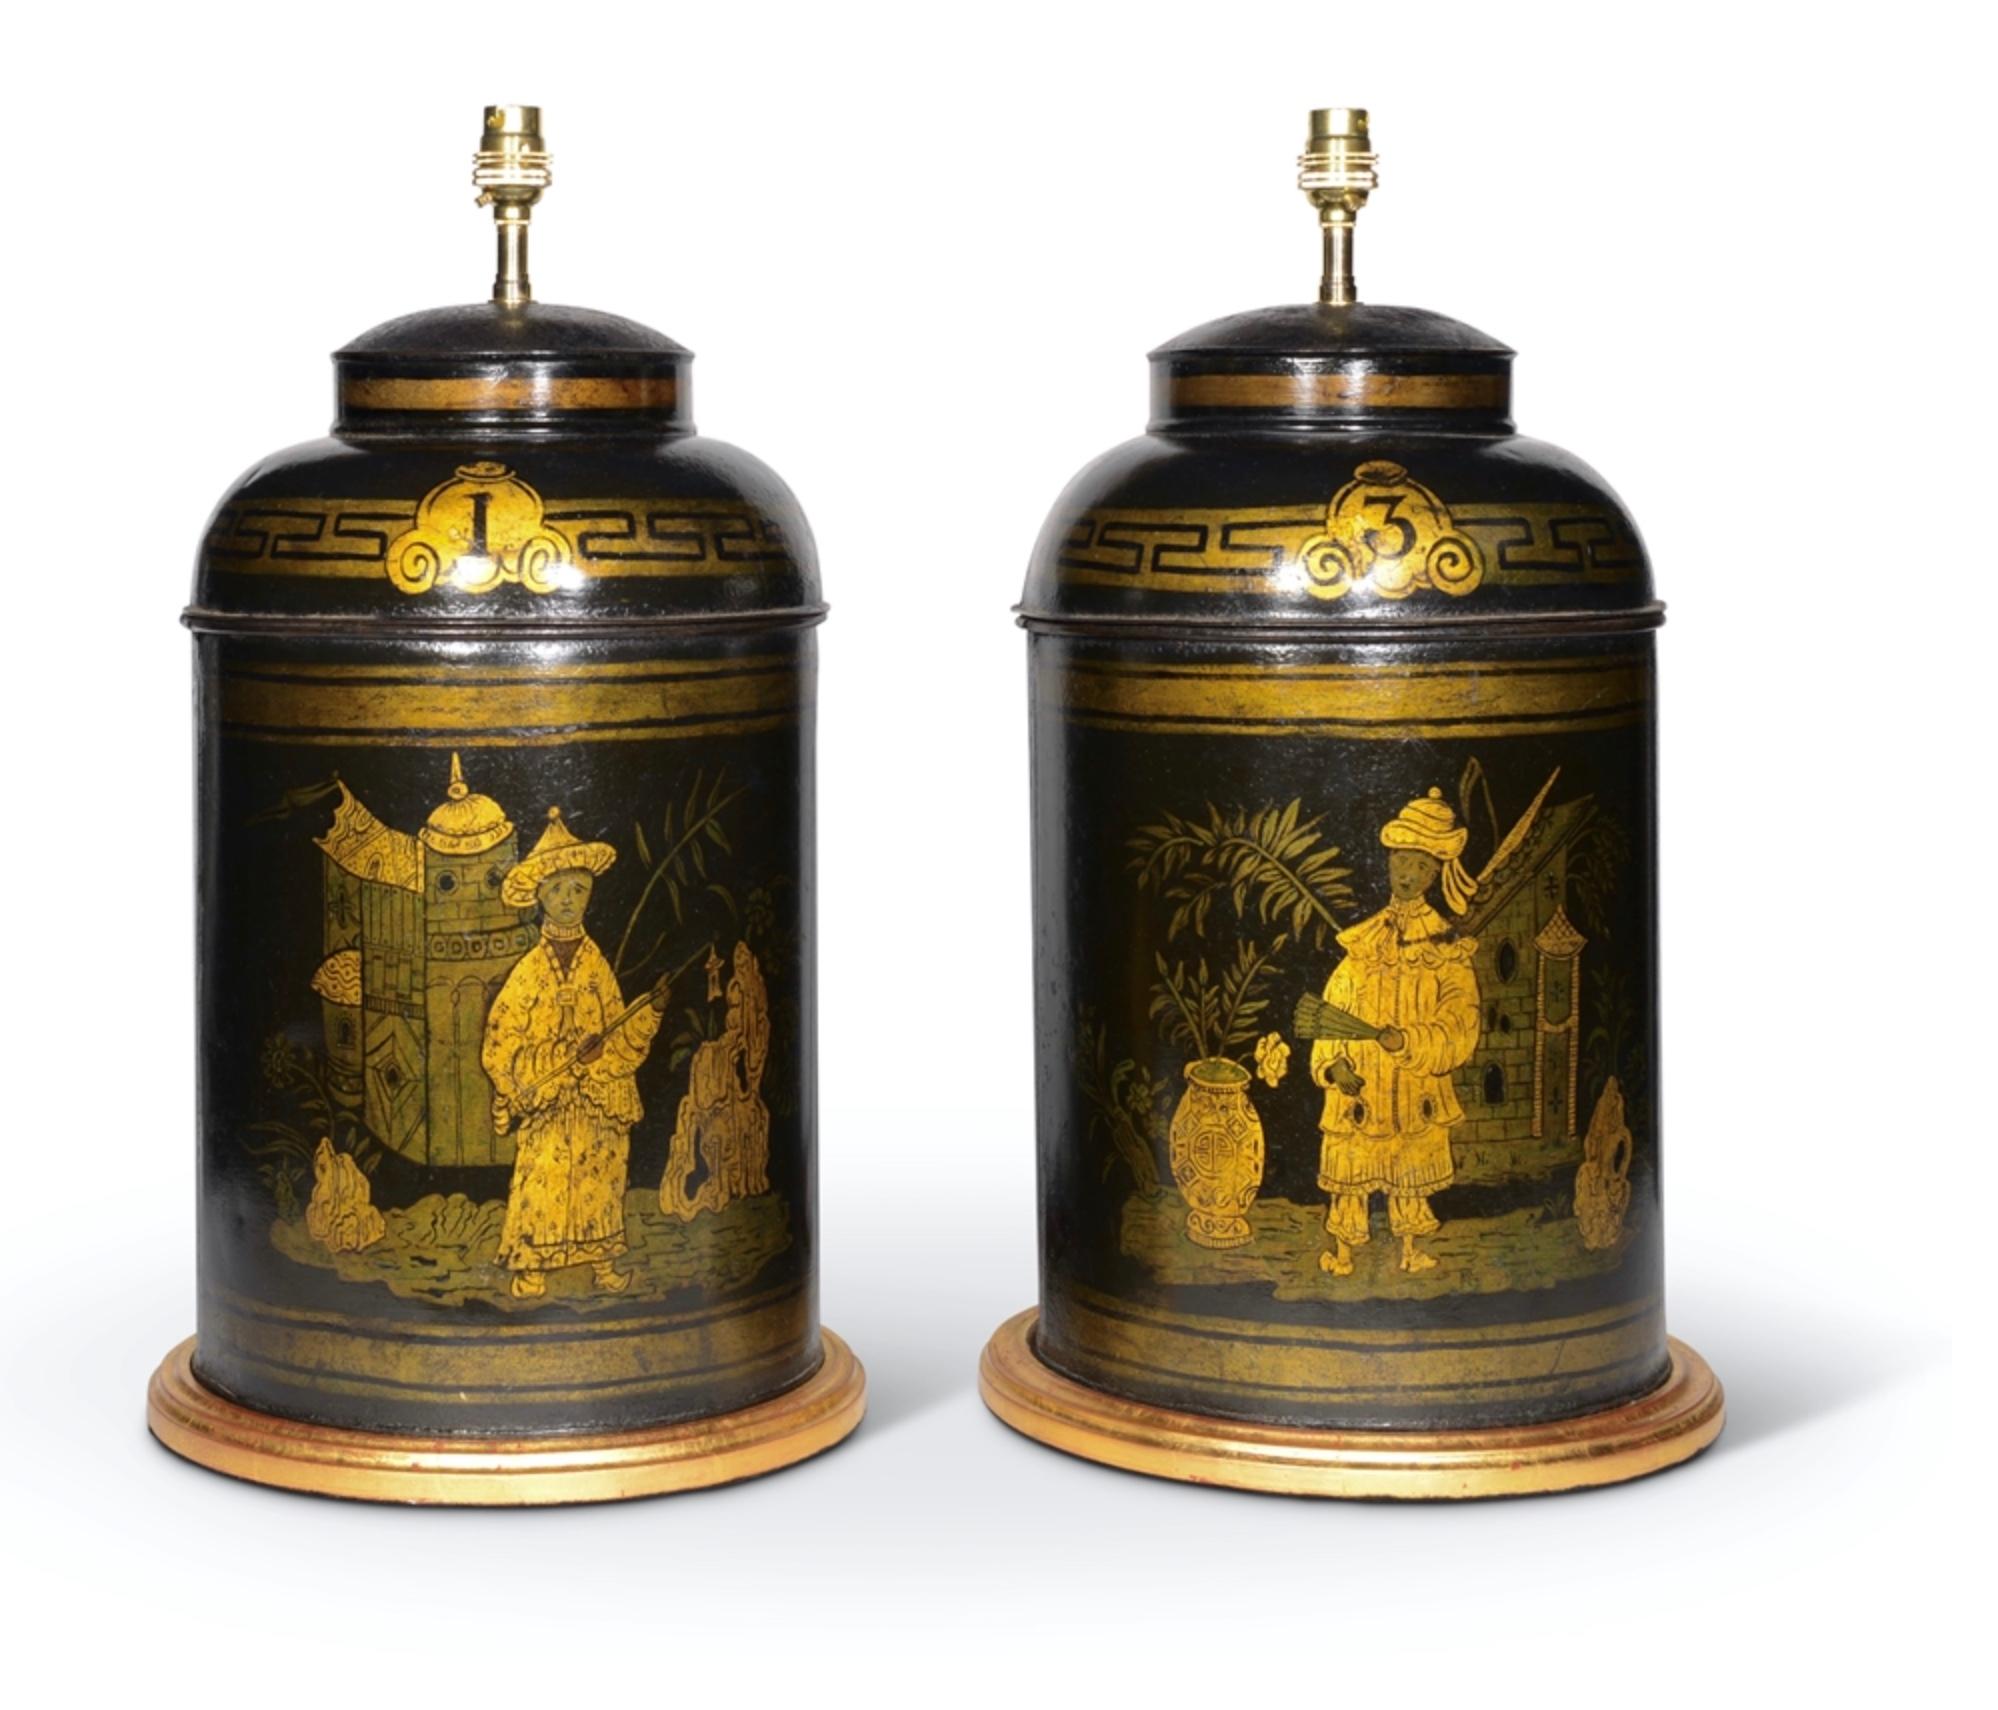 Une paire de boîtes à thé à couvercle numéroté de la période Regency du début du 19e siècle, décorées de figures et de motifs de chinoiserie en rehauts dorés sur un fond noir en japanis. Maintenant montées comme des lampes avec des bases tournées et